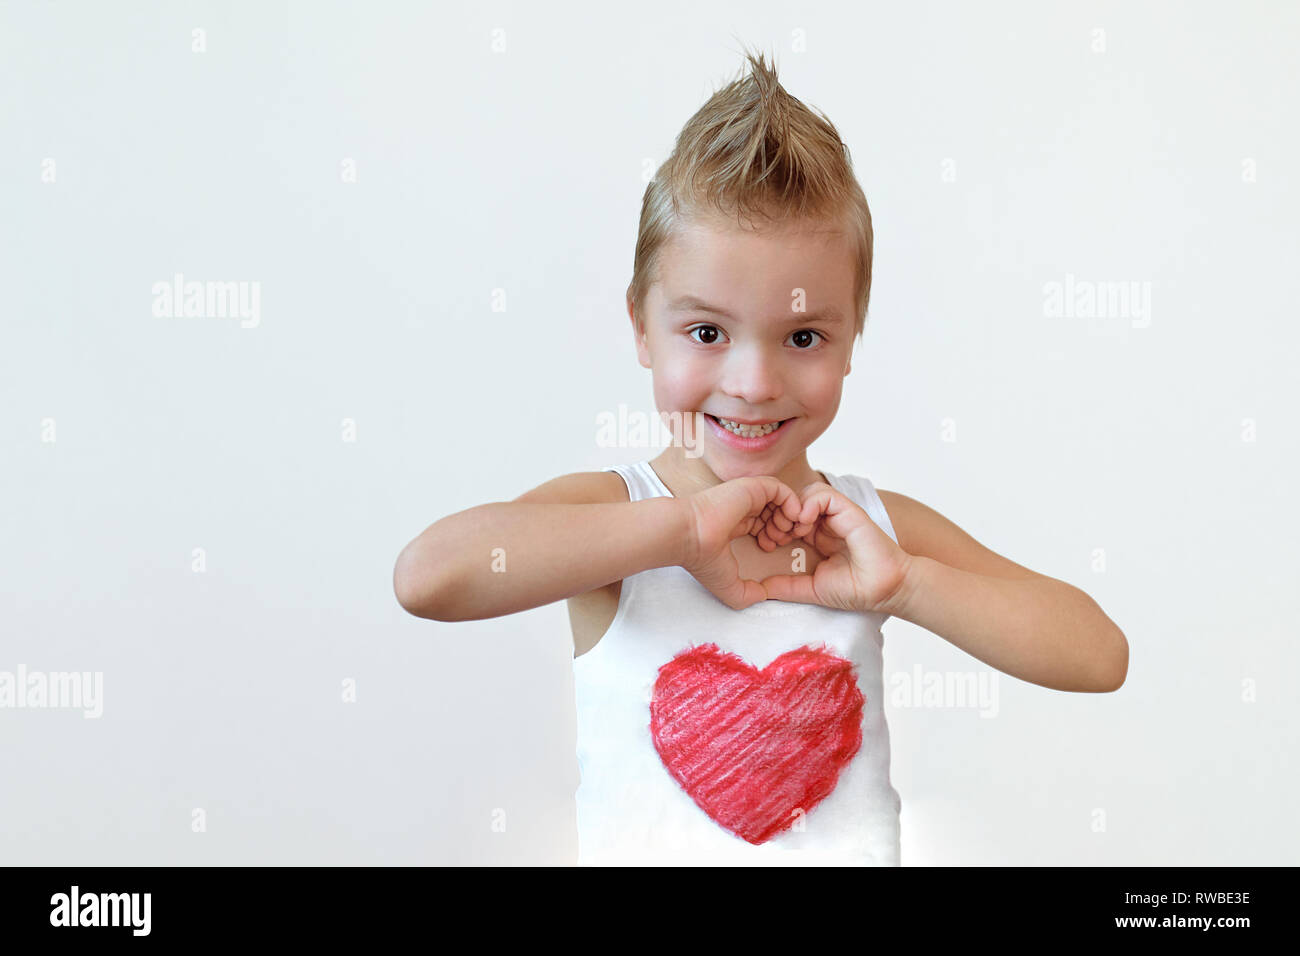 Schönes Kind Junge lächelnd zeigt Herz unterzeichnen. Portrait Kind blond 6 Jahr mit Lächeln, Hände Geste der Liebe. Studio isoliert weißer Hintergrund. Stockfoto